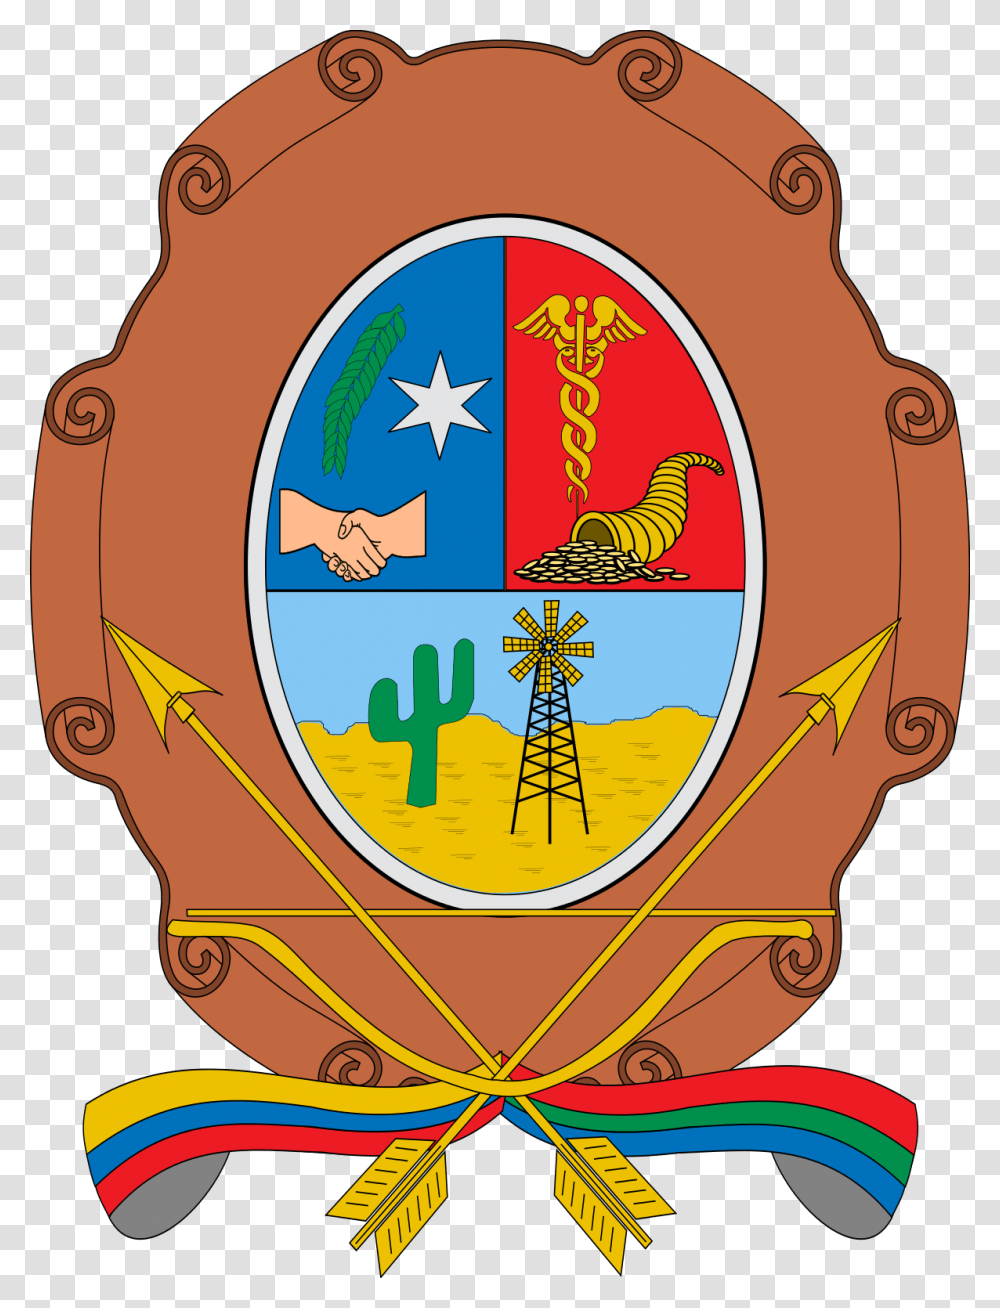 Escudo De Maicao, Logo, Trademark, Emblem Transparent Png